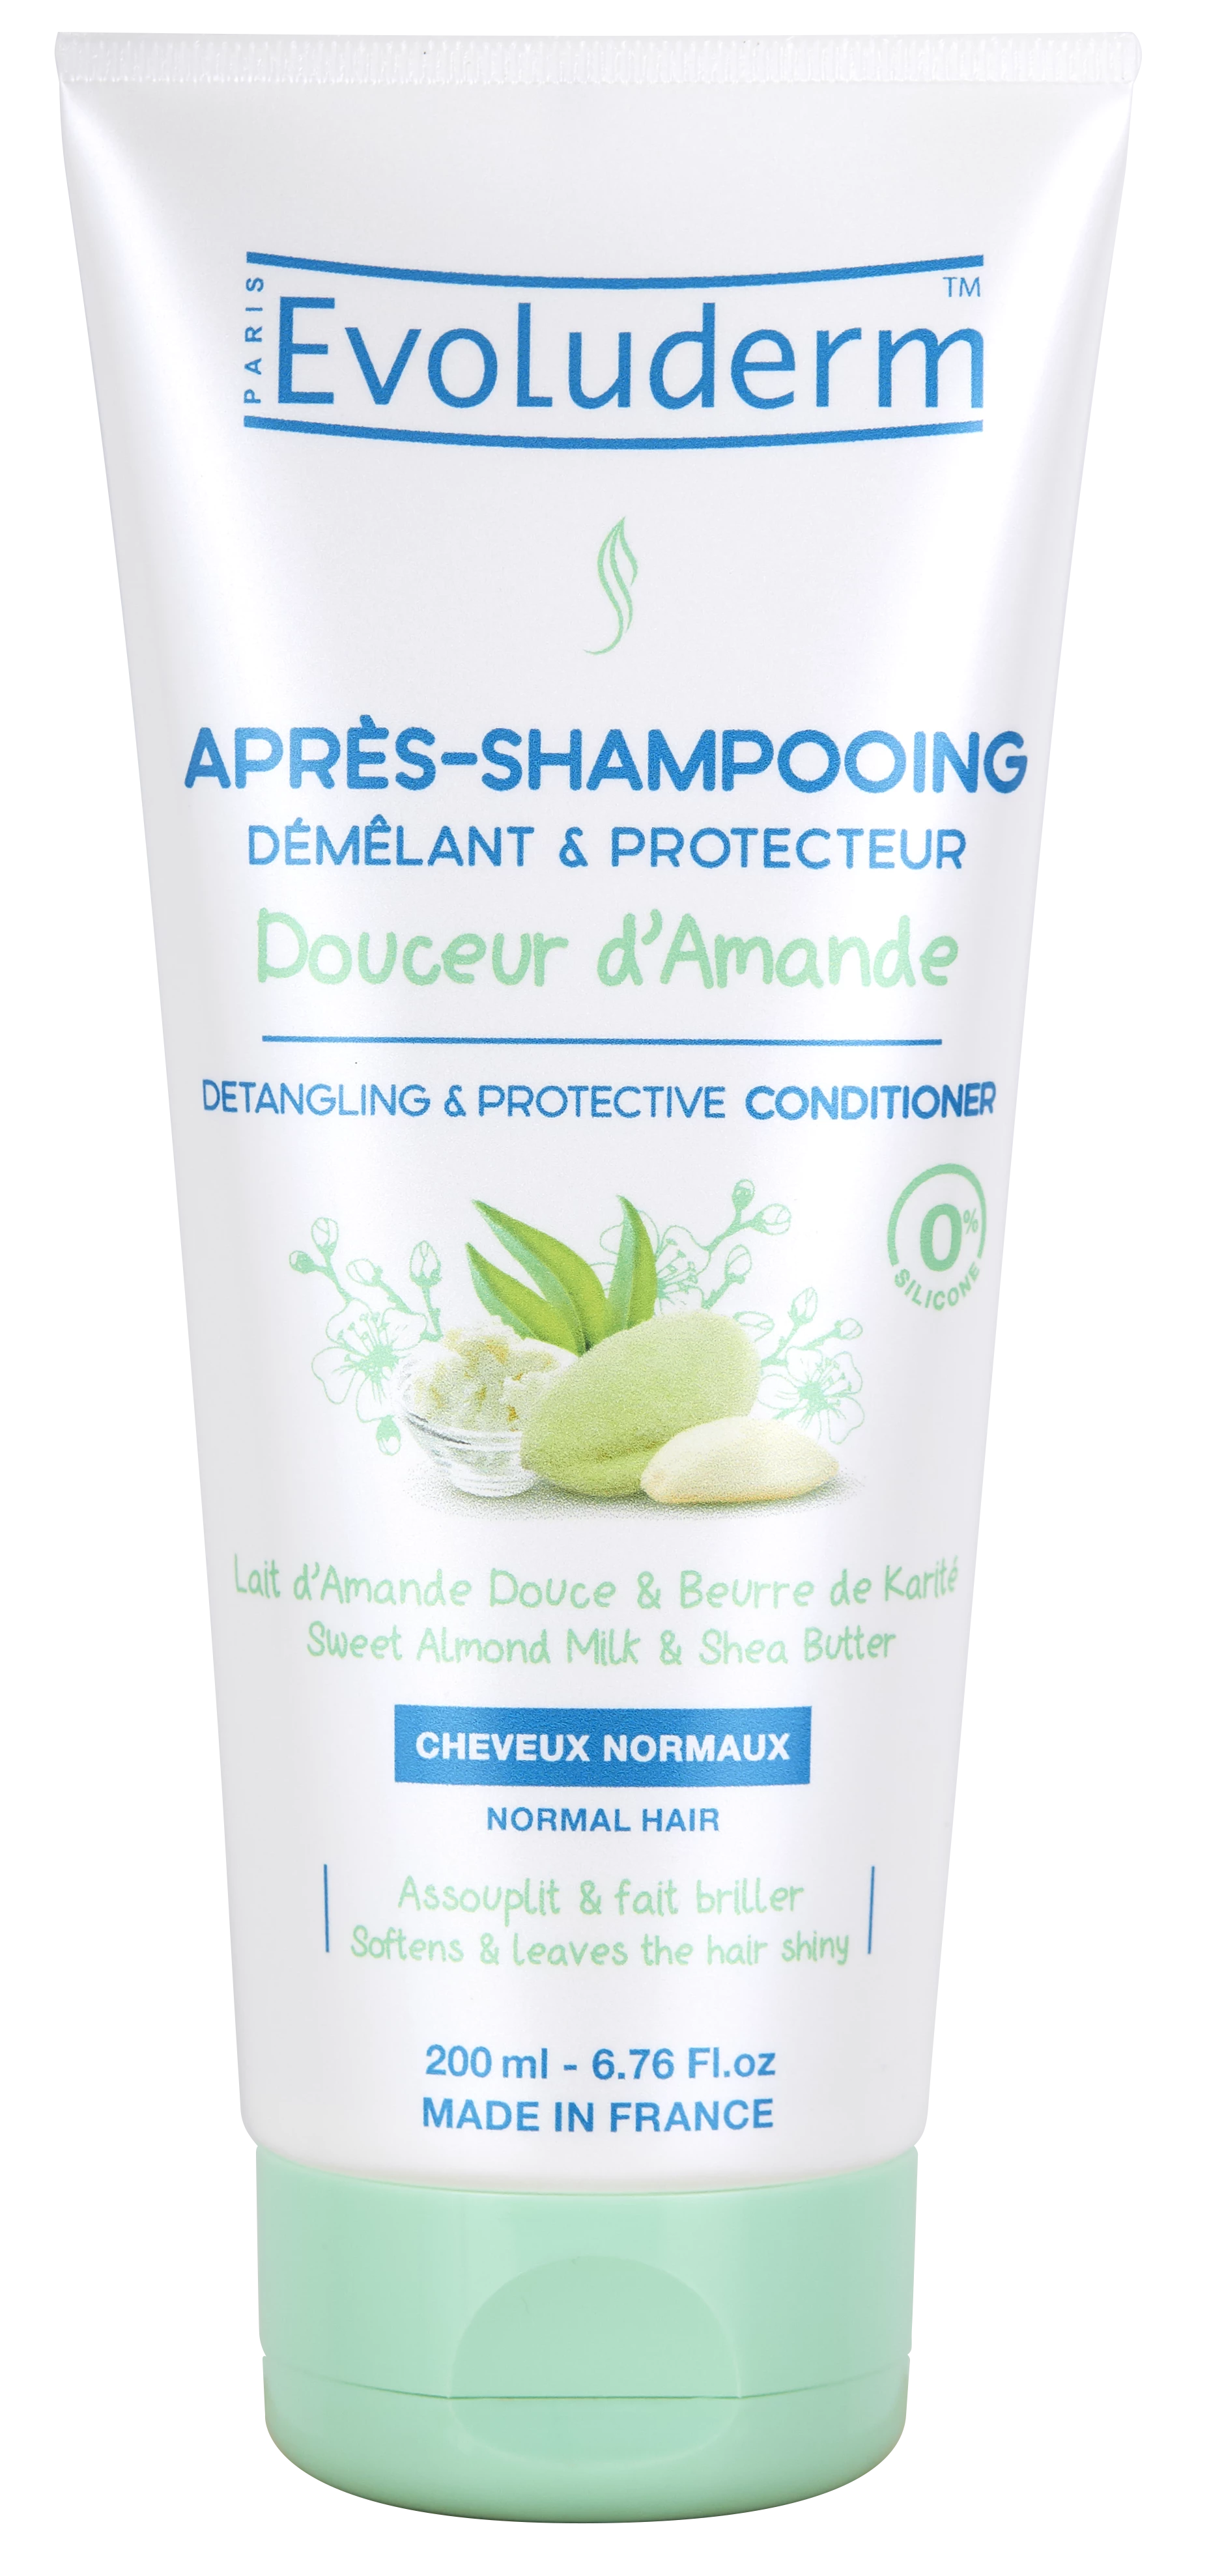 Après-shampooing Protecteur Douceur D'amande 200ml - Evoluderm